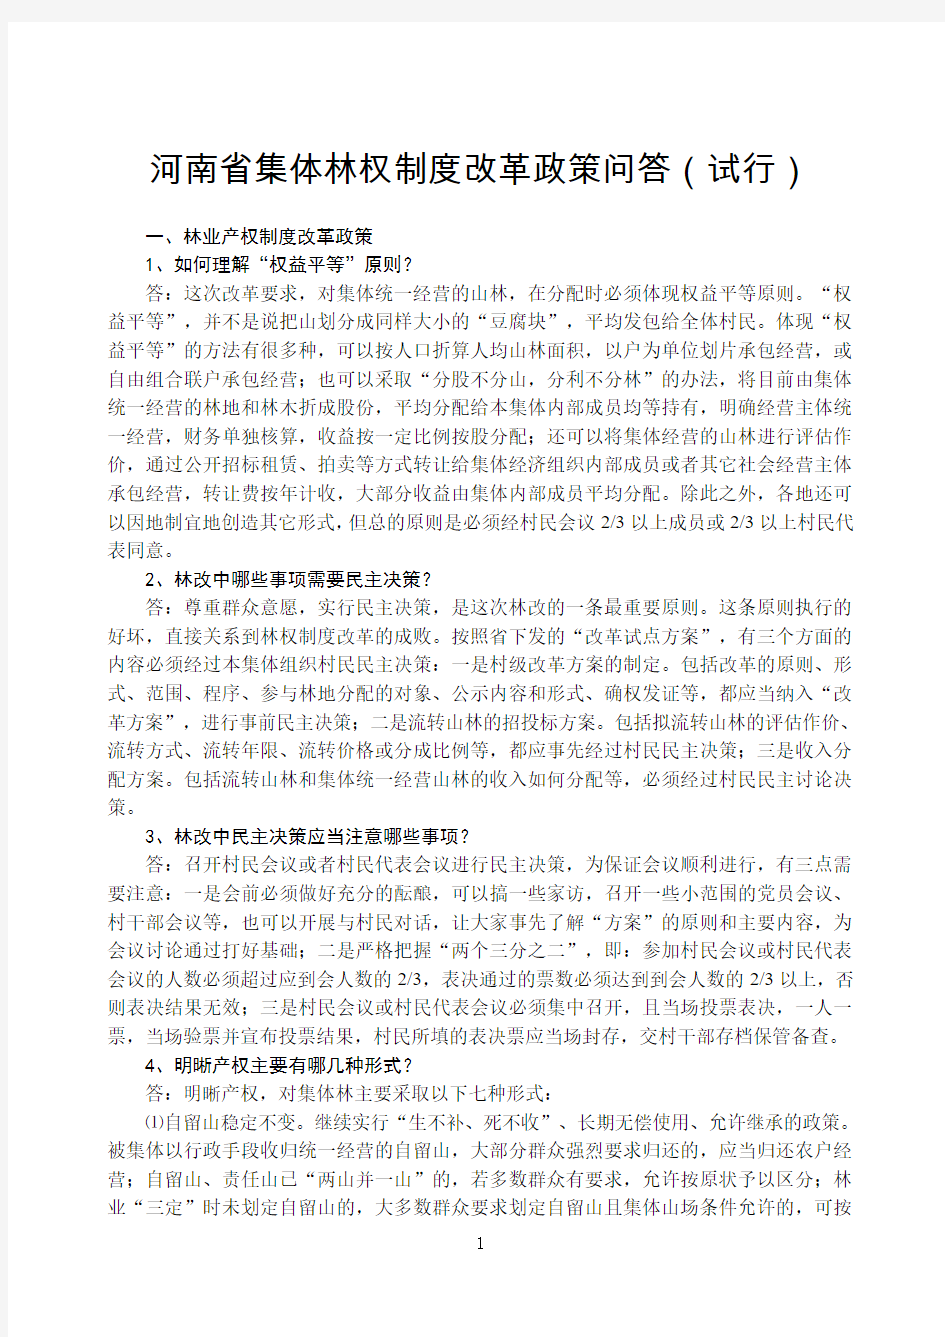 河南省集体林权制度改革政策问答(试行)